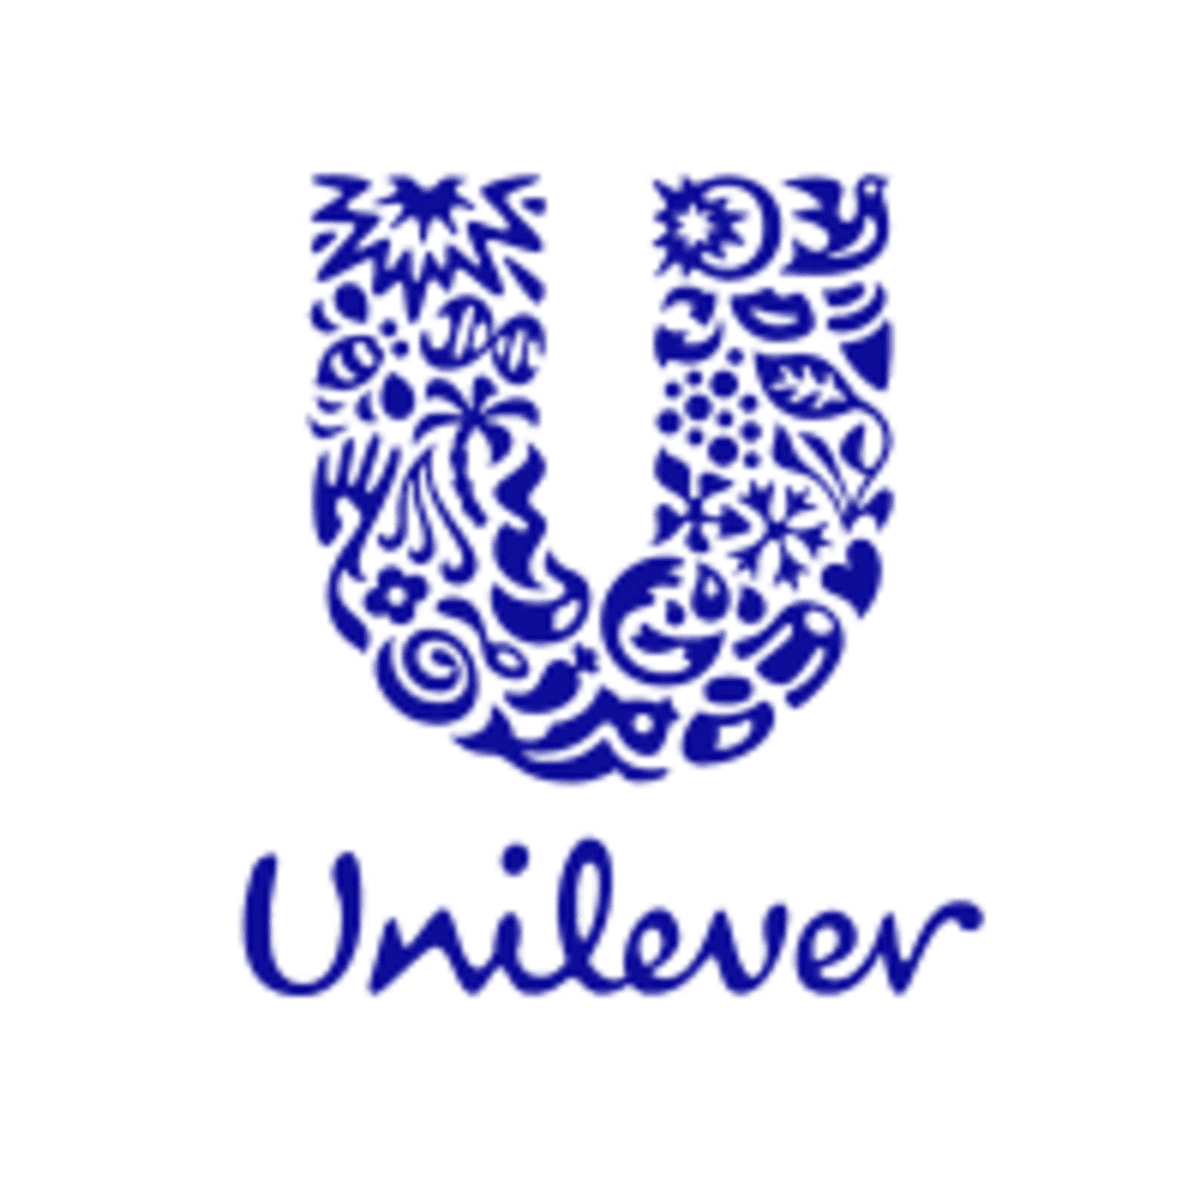 Various Job Vacancies at UNILEVER Tanzania 2022, Nafasi za kazi Unilever Carriers 2022, Unilever Jobs, Unilever Careers, Unilever Tanzania Jobs 2022